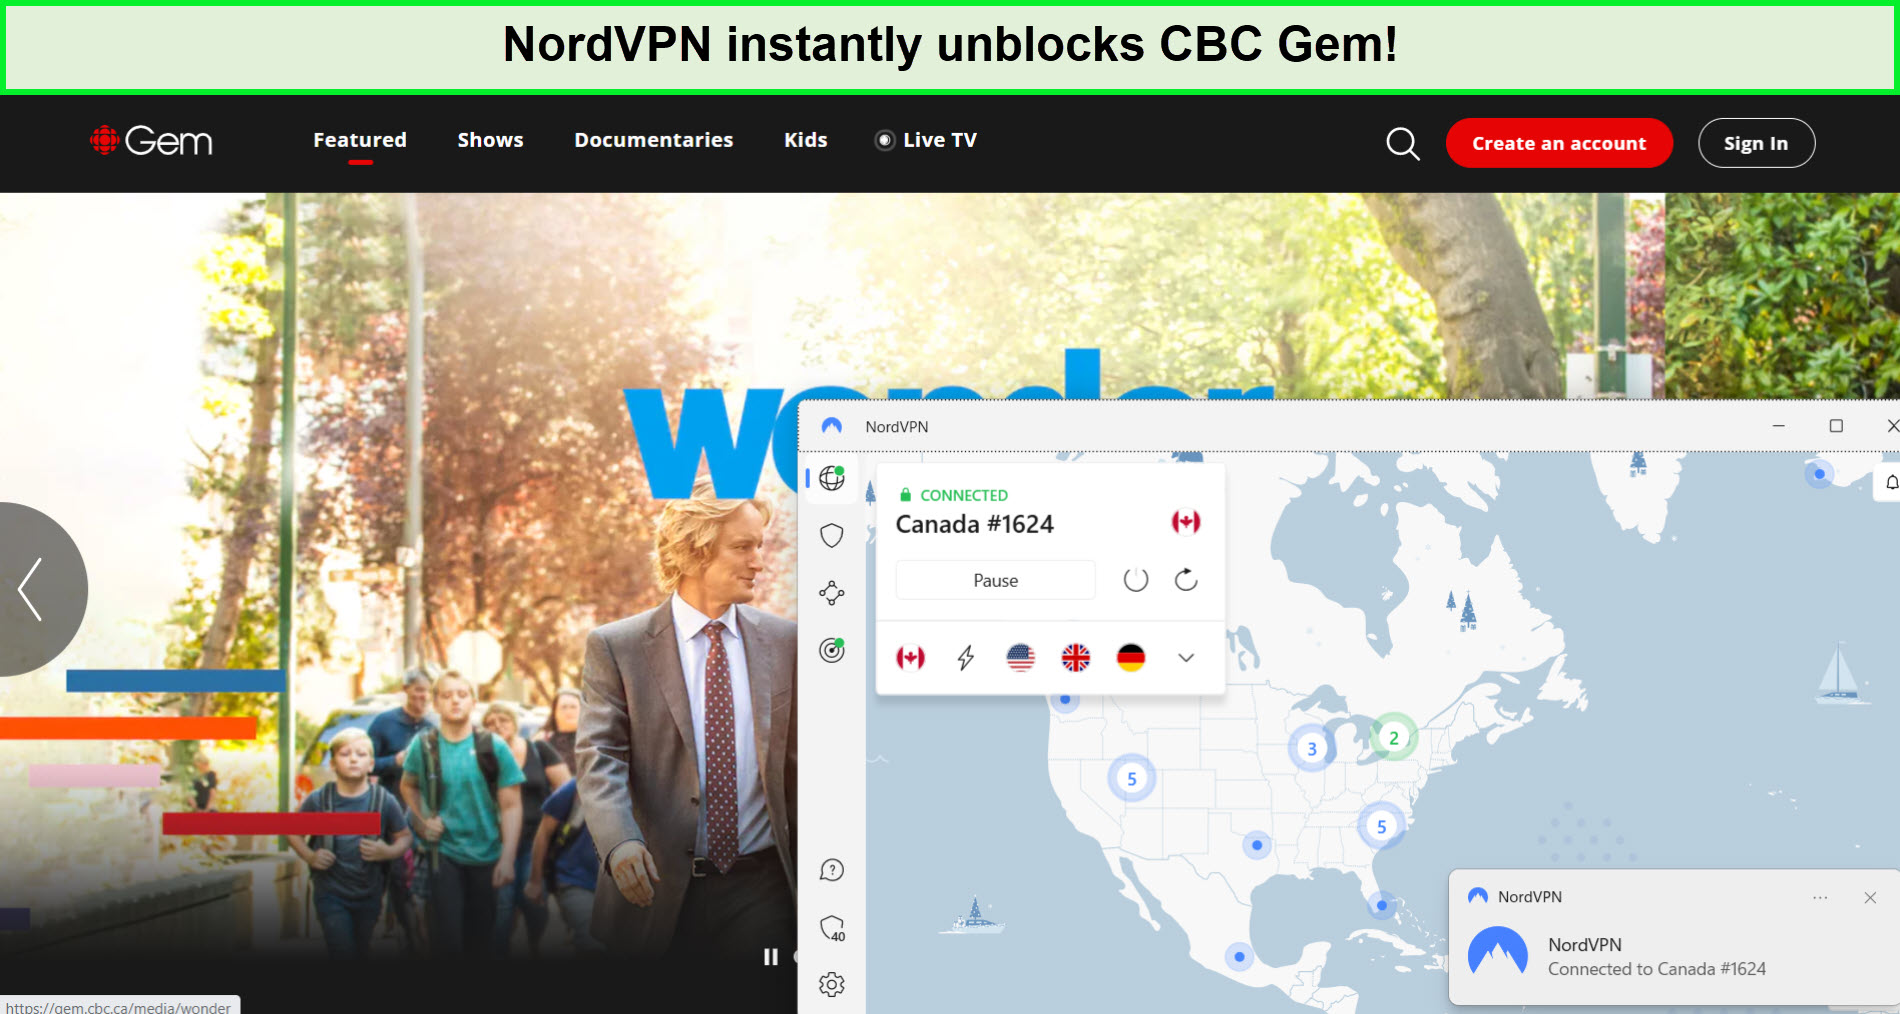 nordvpn-unblocks-cbc-gem-in-india